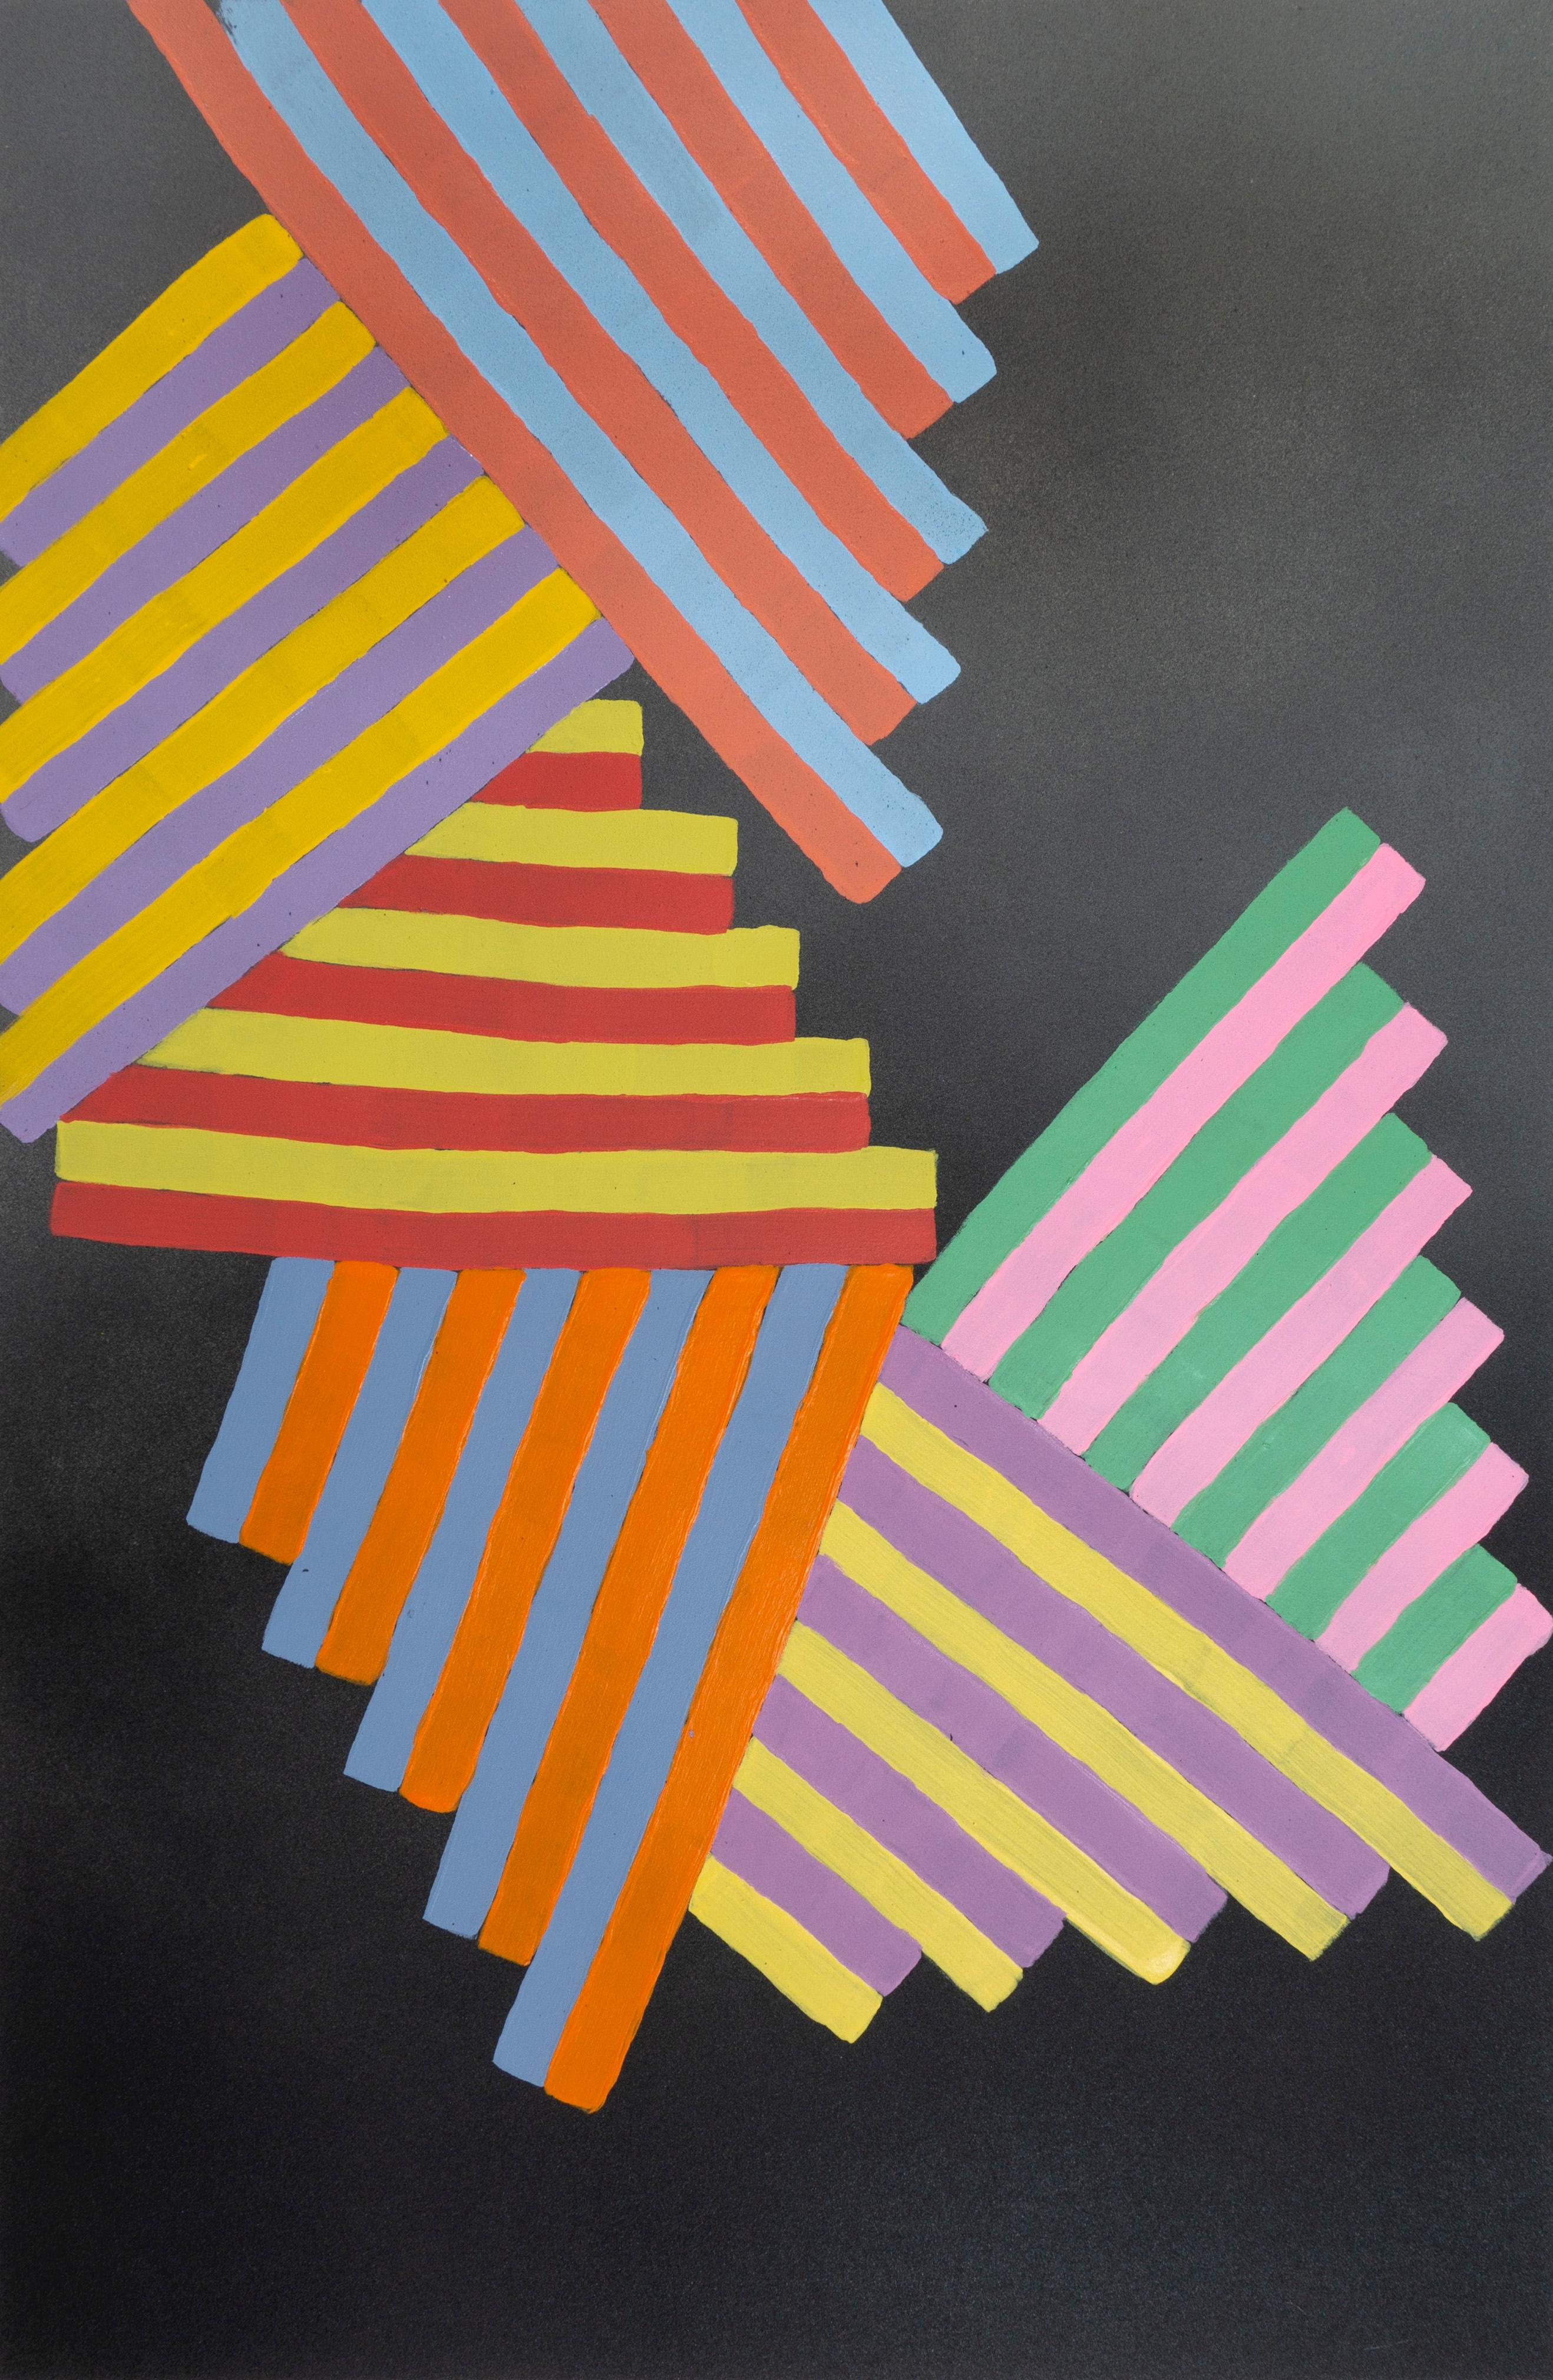 Abstract Painting Jay Walker - Intérieur Space n°12 : peinture géométrique abstraite sur papier ; bleu, jaune, rouge et noir